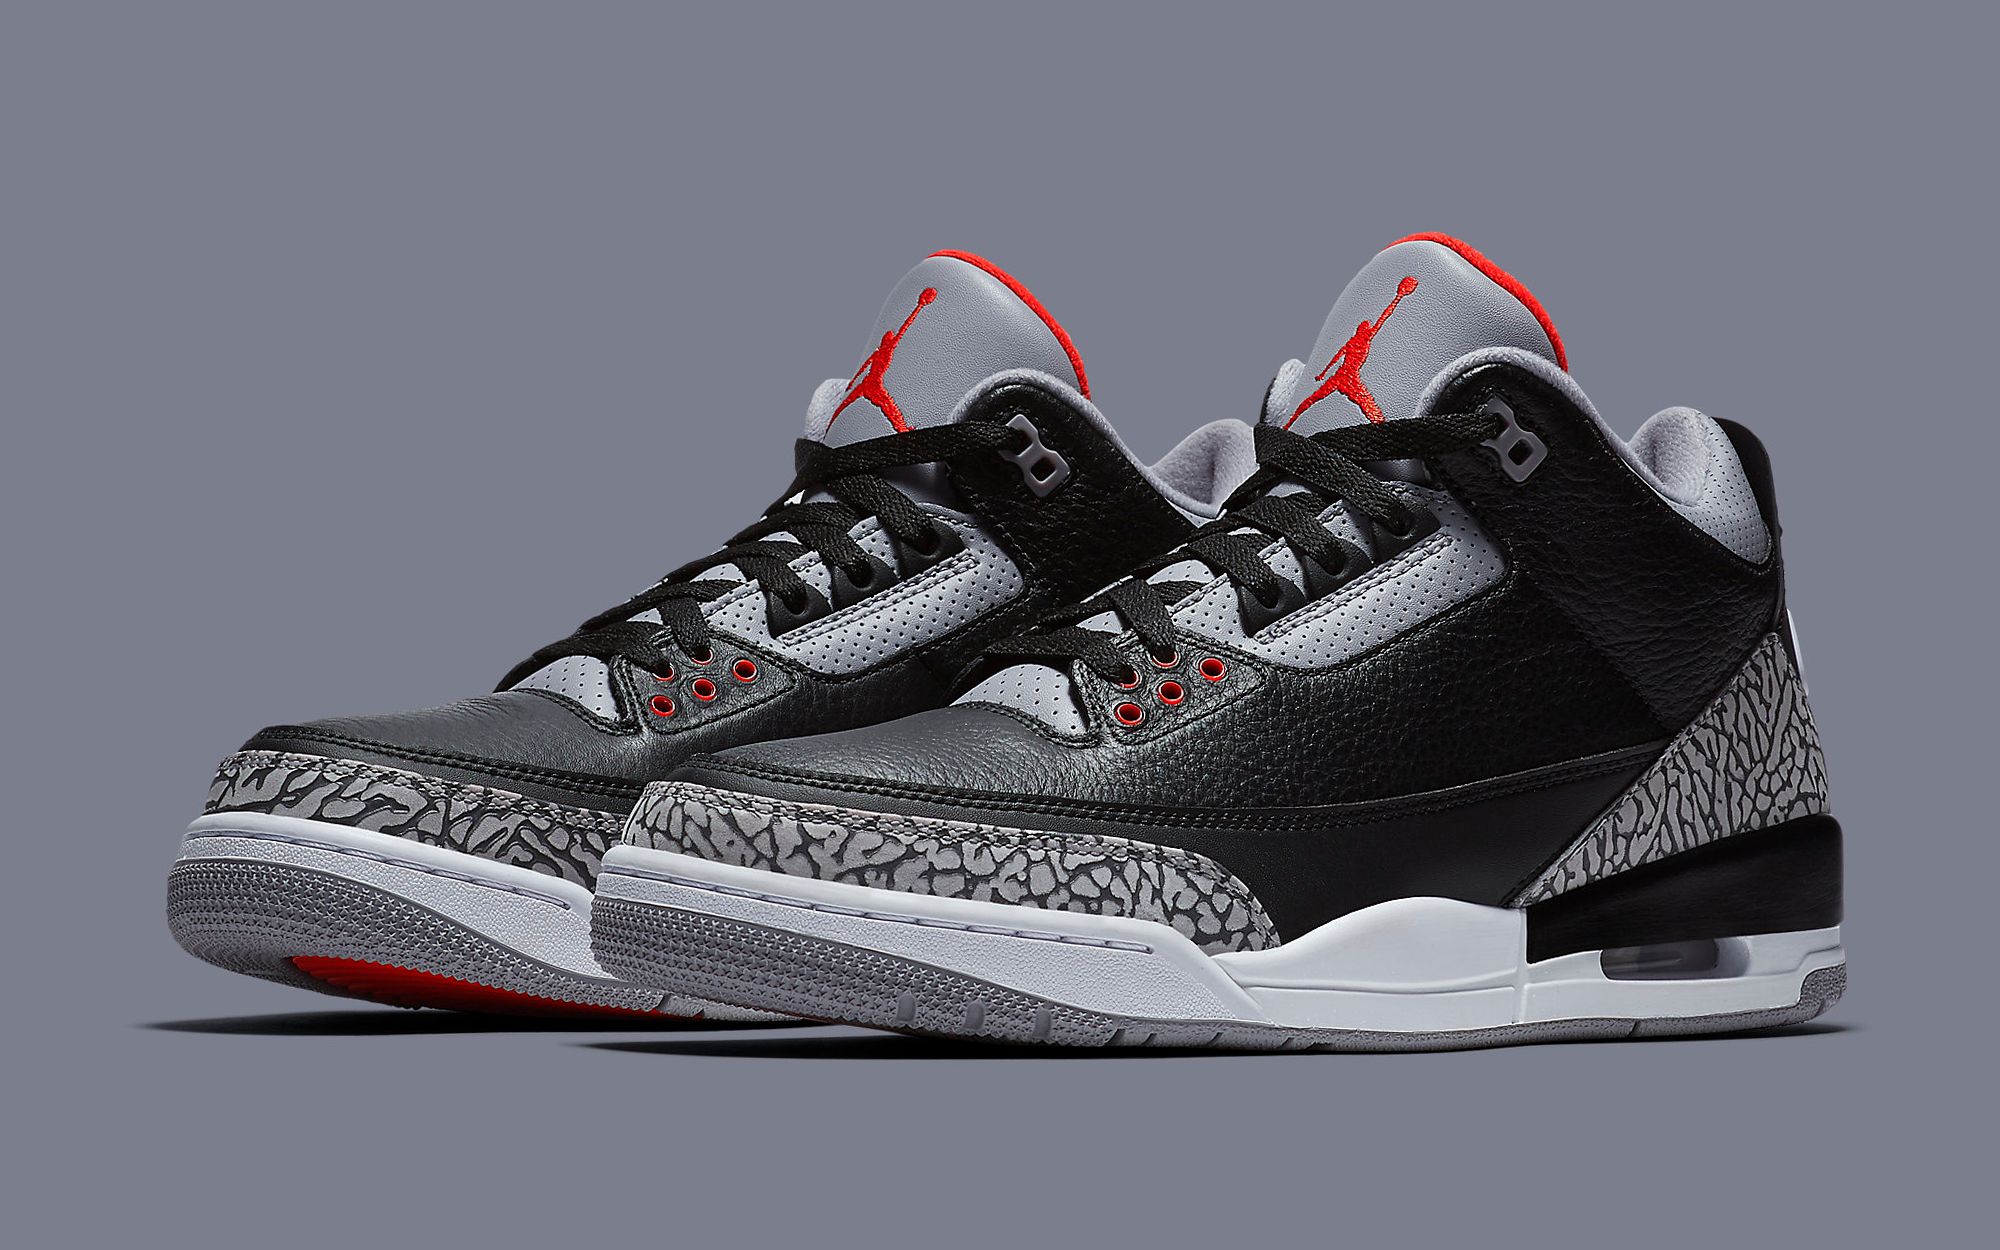 The Air Jordan 3 OG “Black Cement” Returns November 23 | House of Heat°